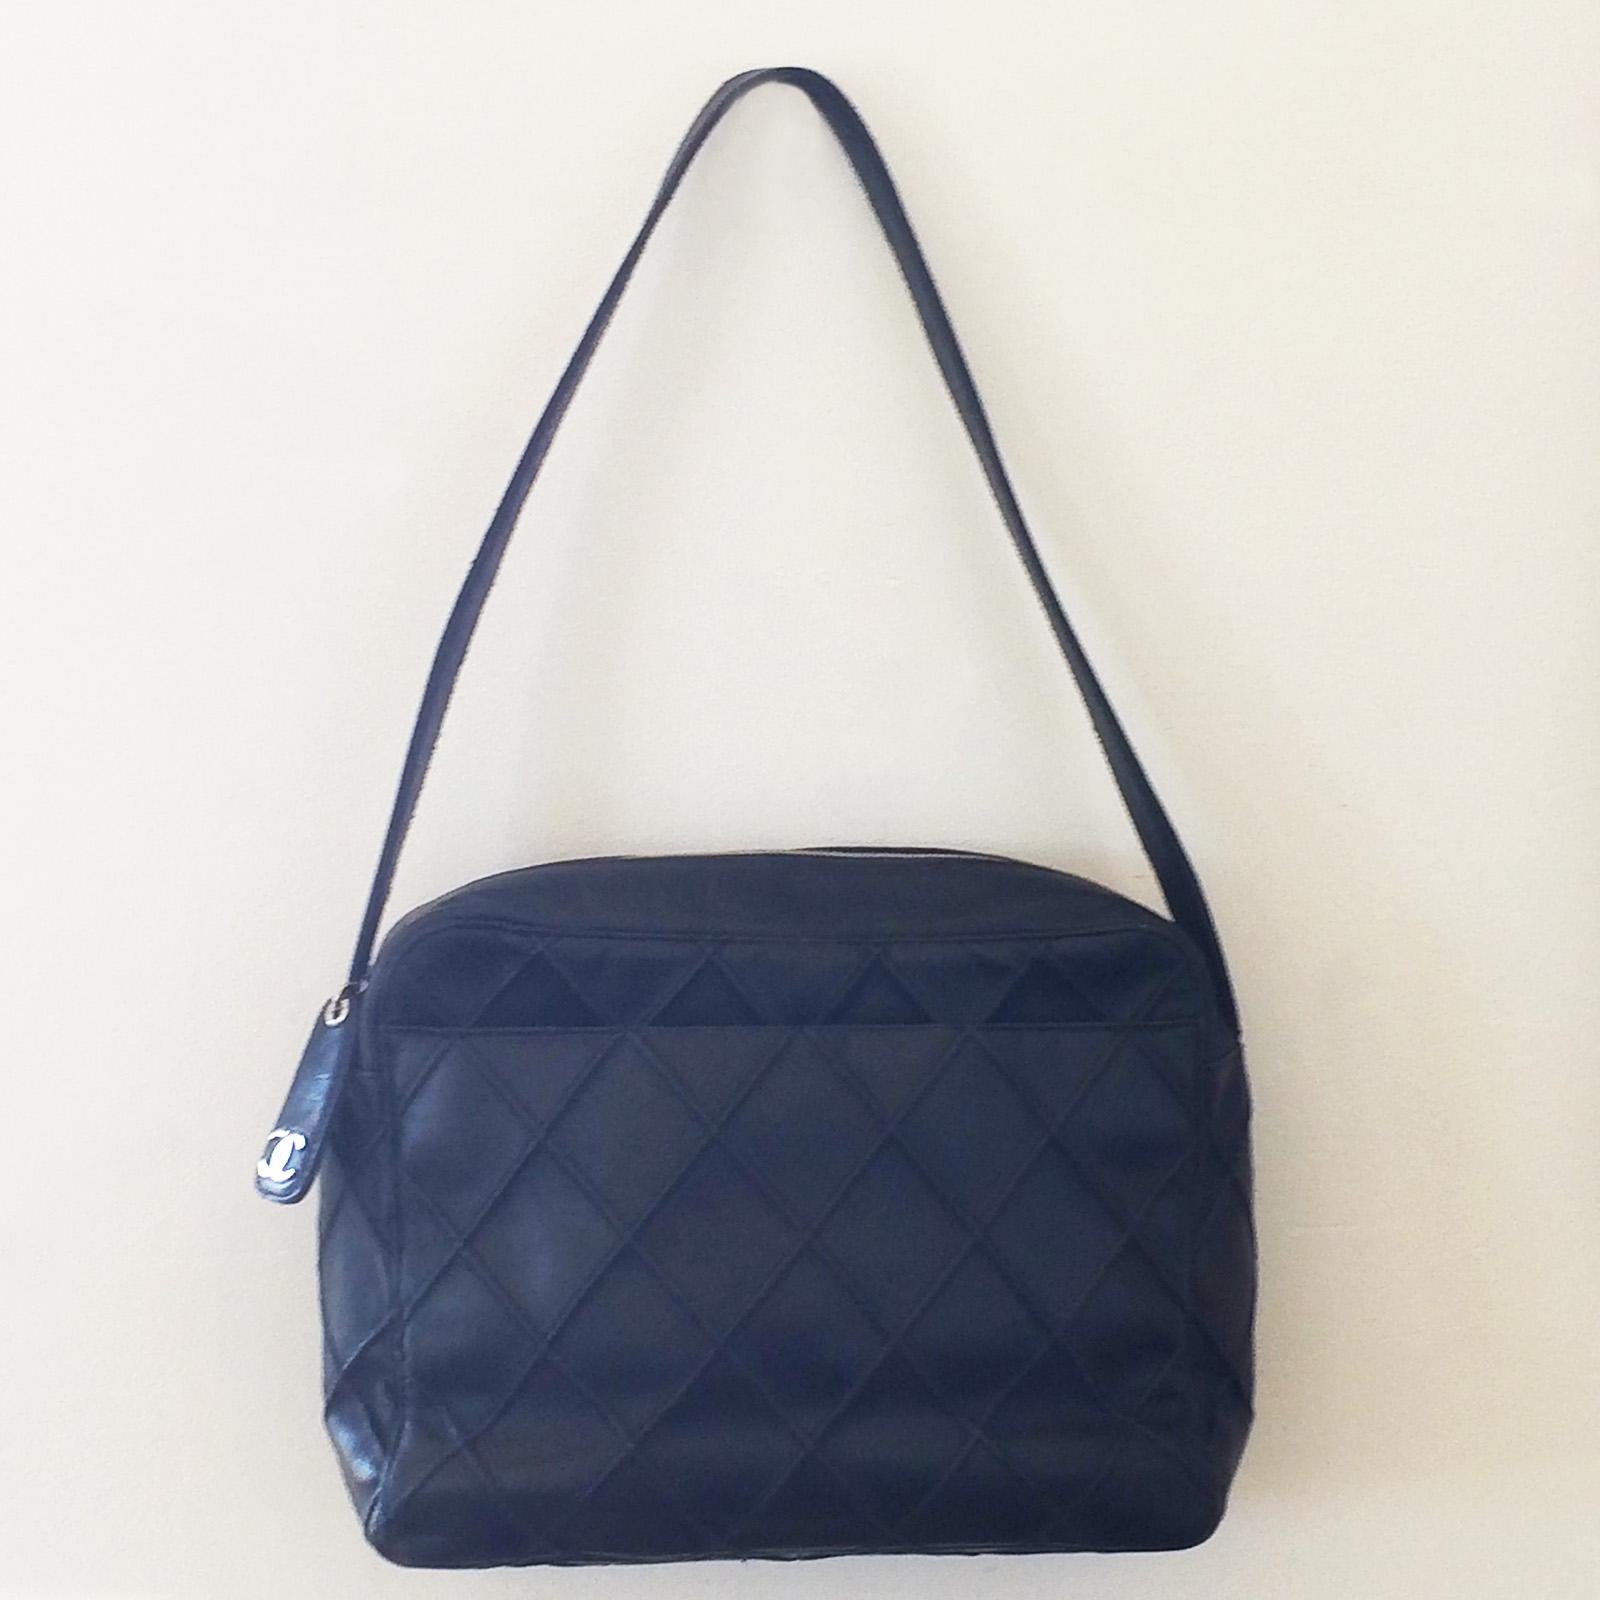 Black Authentic Chanel Vintage Shoulder Bag Handbag For Sale